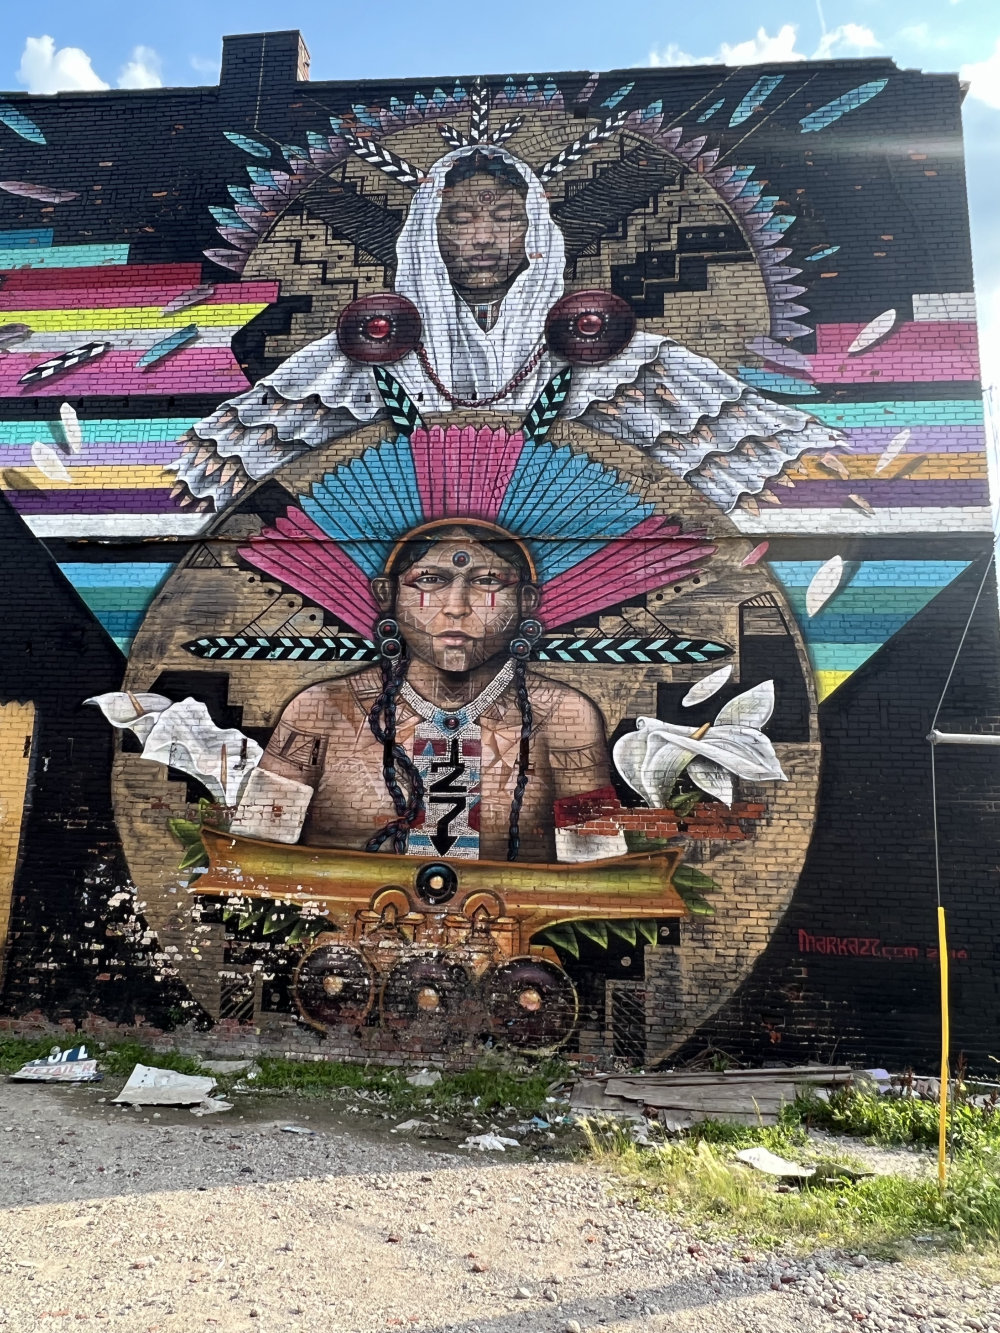 mural in Detroit by artist MARKA27.